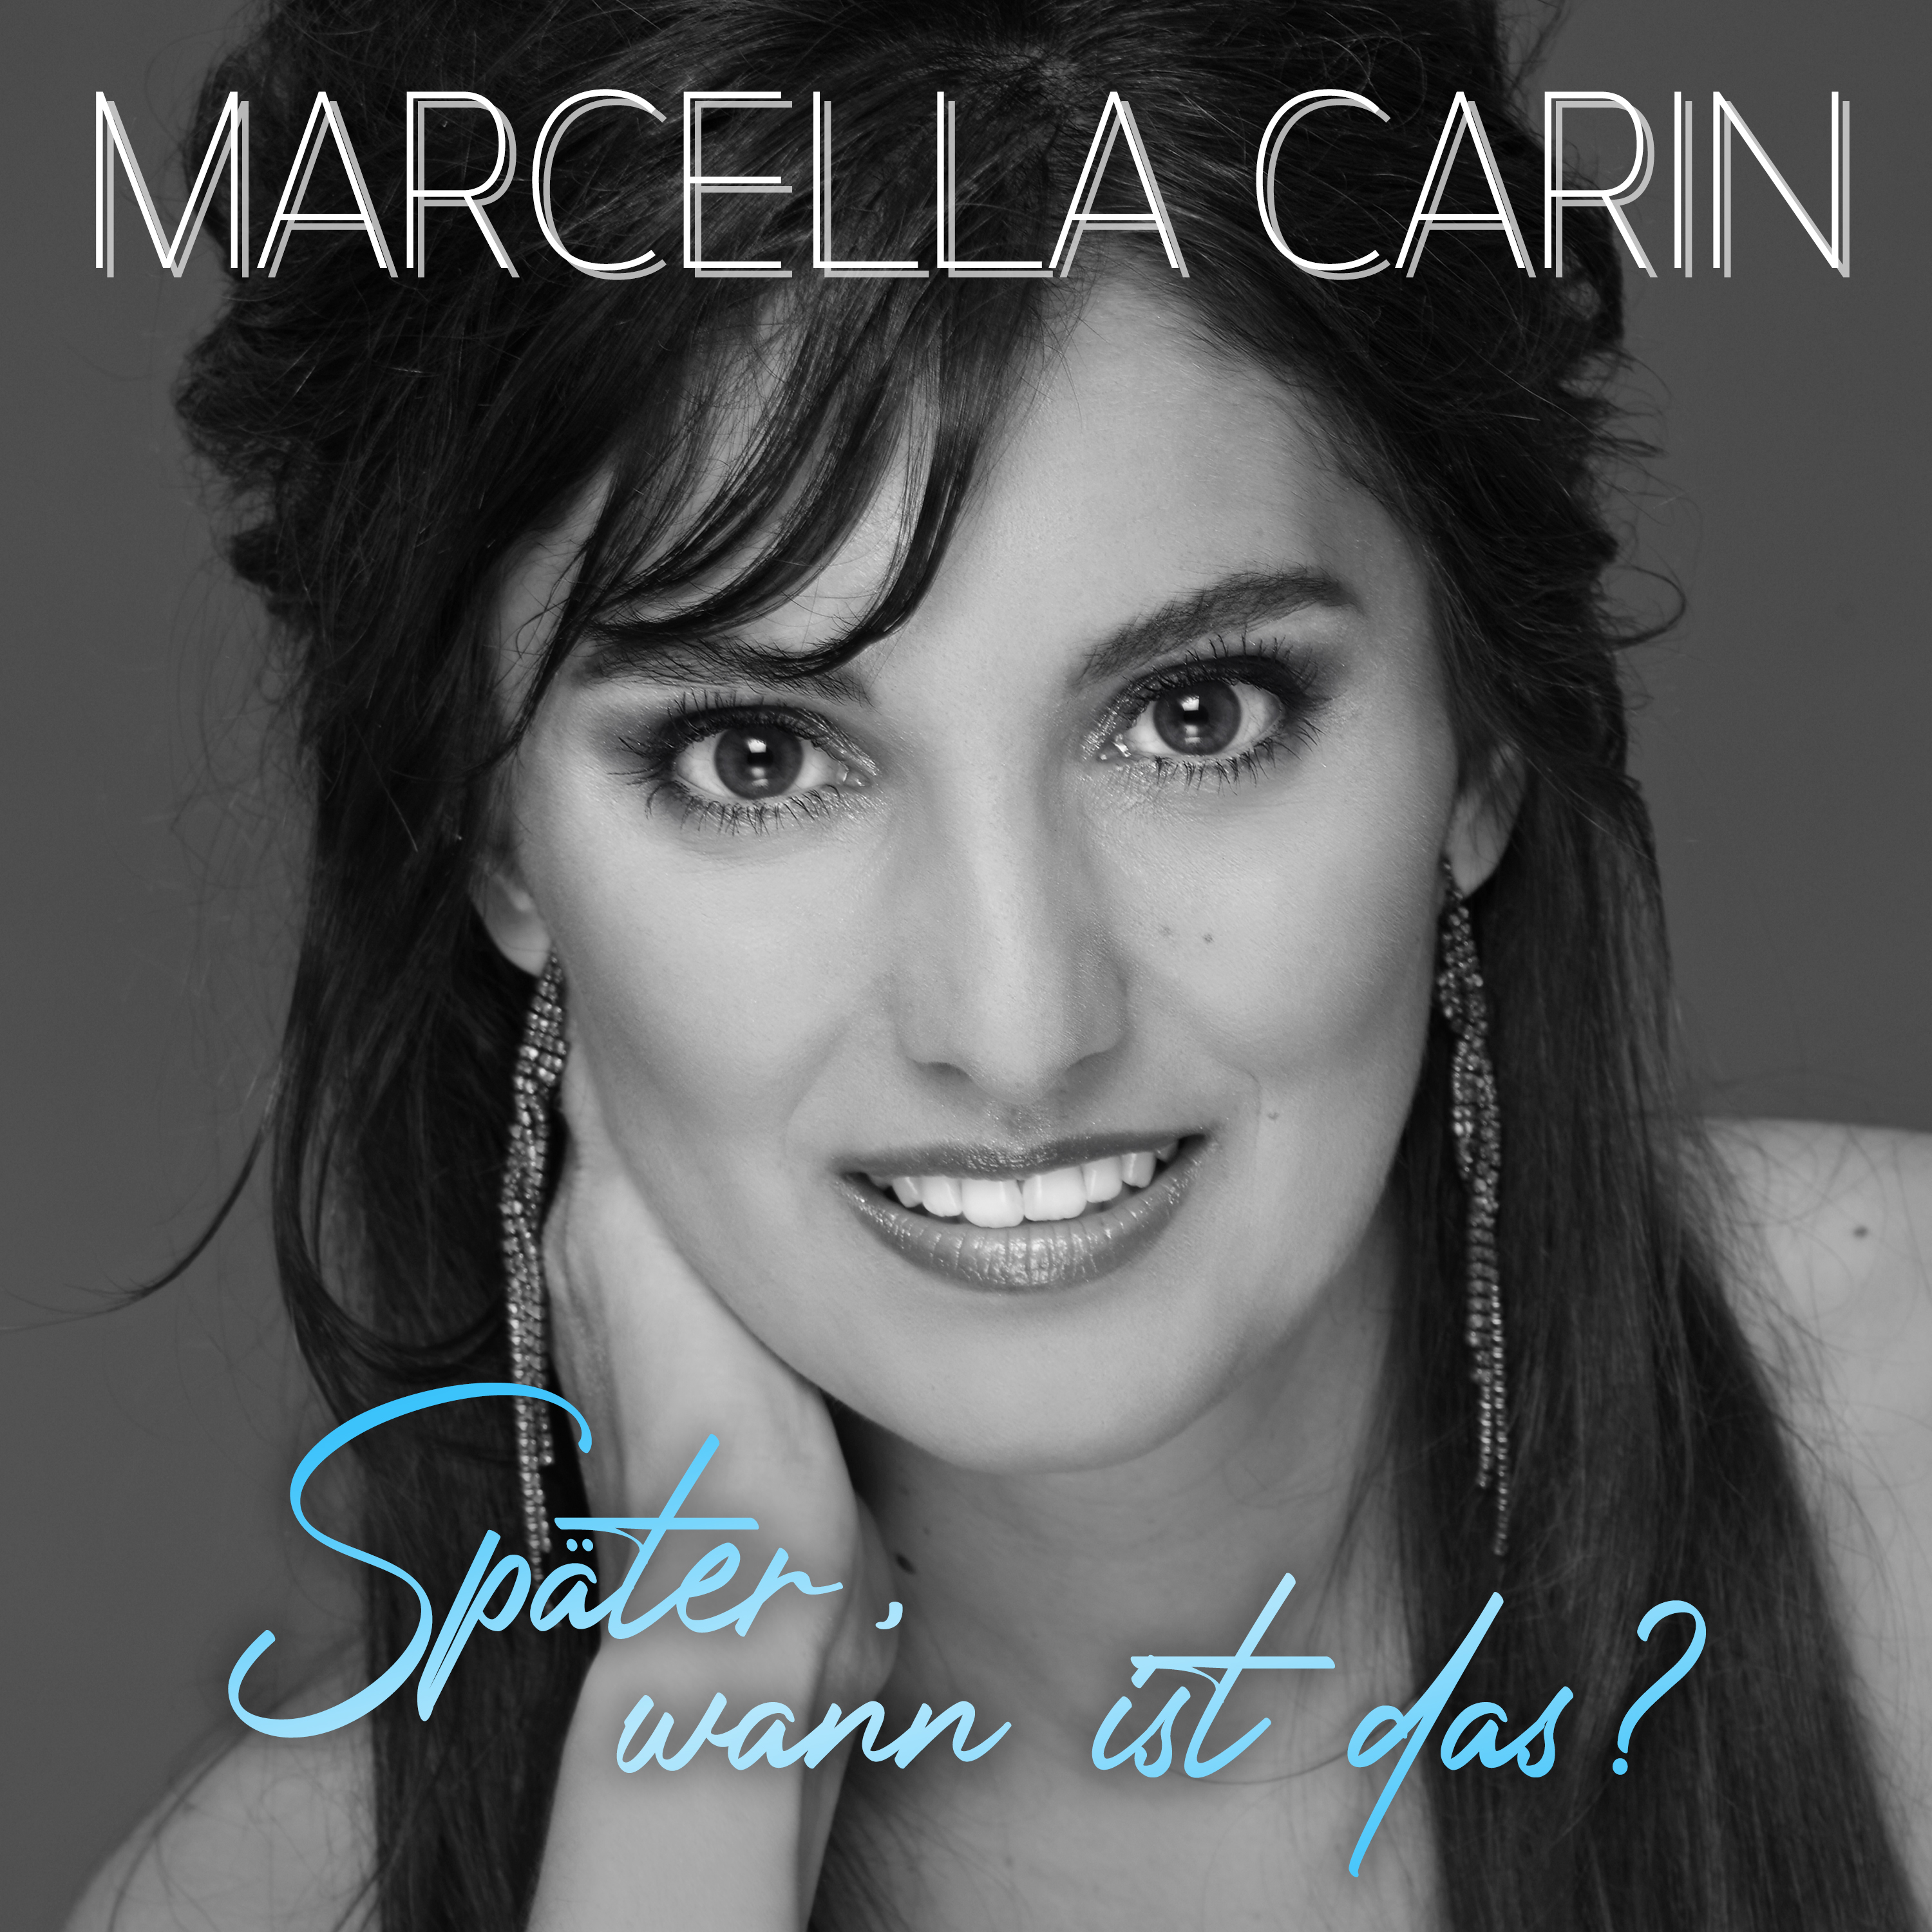 MARCELLA CARIN * Später, wann ist das? (Download-Track)